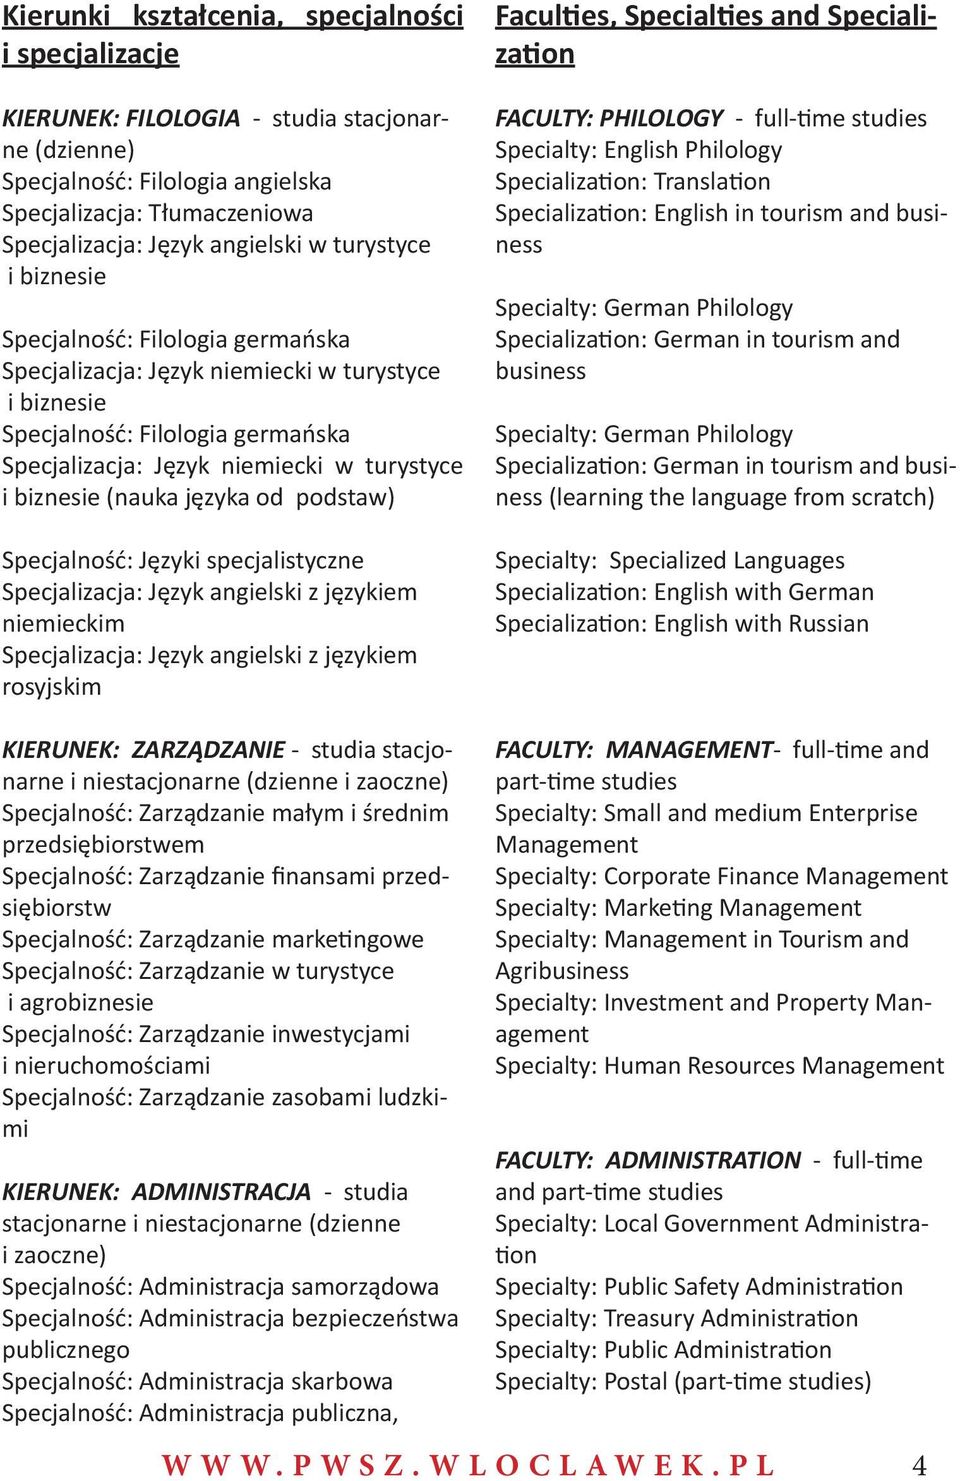 (nauka języka od podstaw) Specjalność: Języki specjalistyczne Specjalizacja: Język angielski z językiem niemieckim Specjalizacja: Język angielski z językiem rosyjskim Faculties, Specialties and